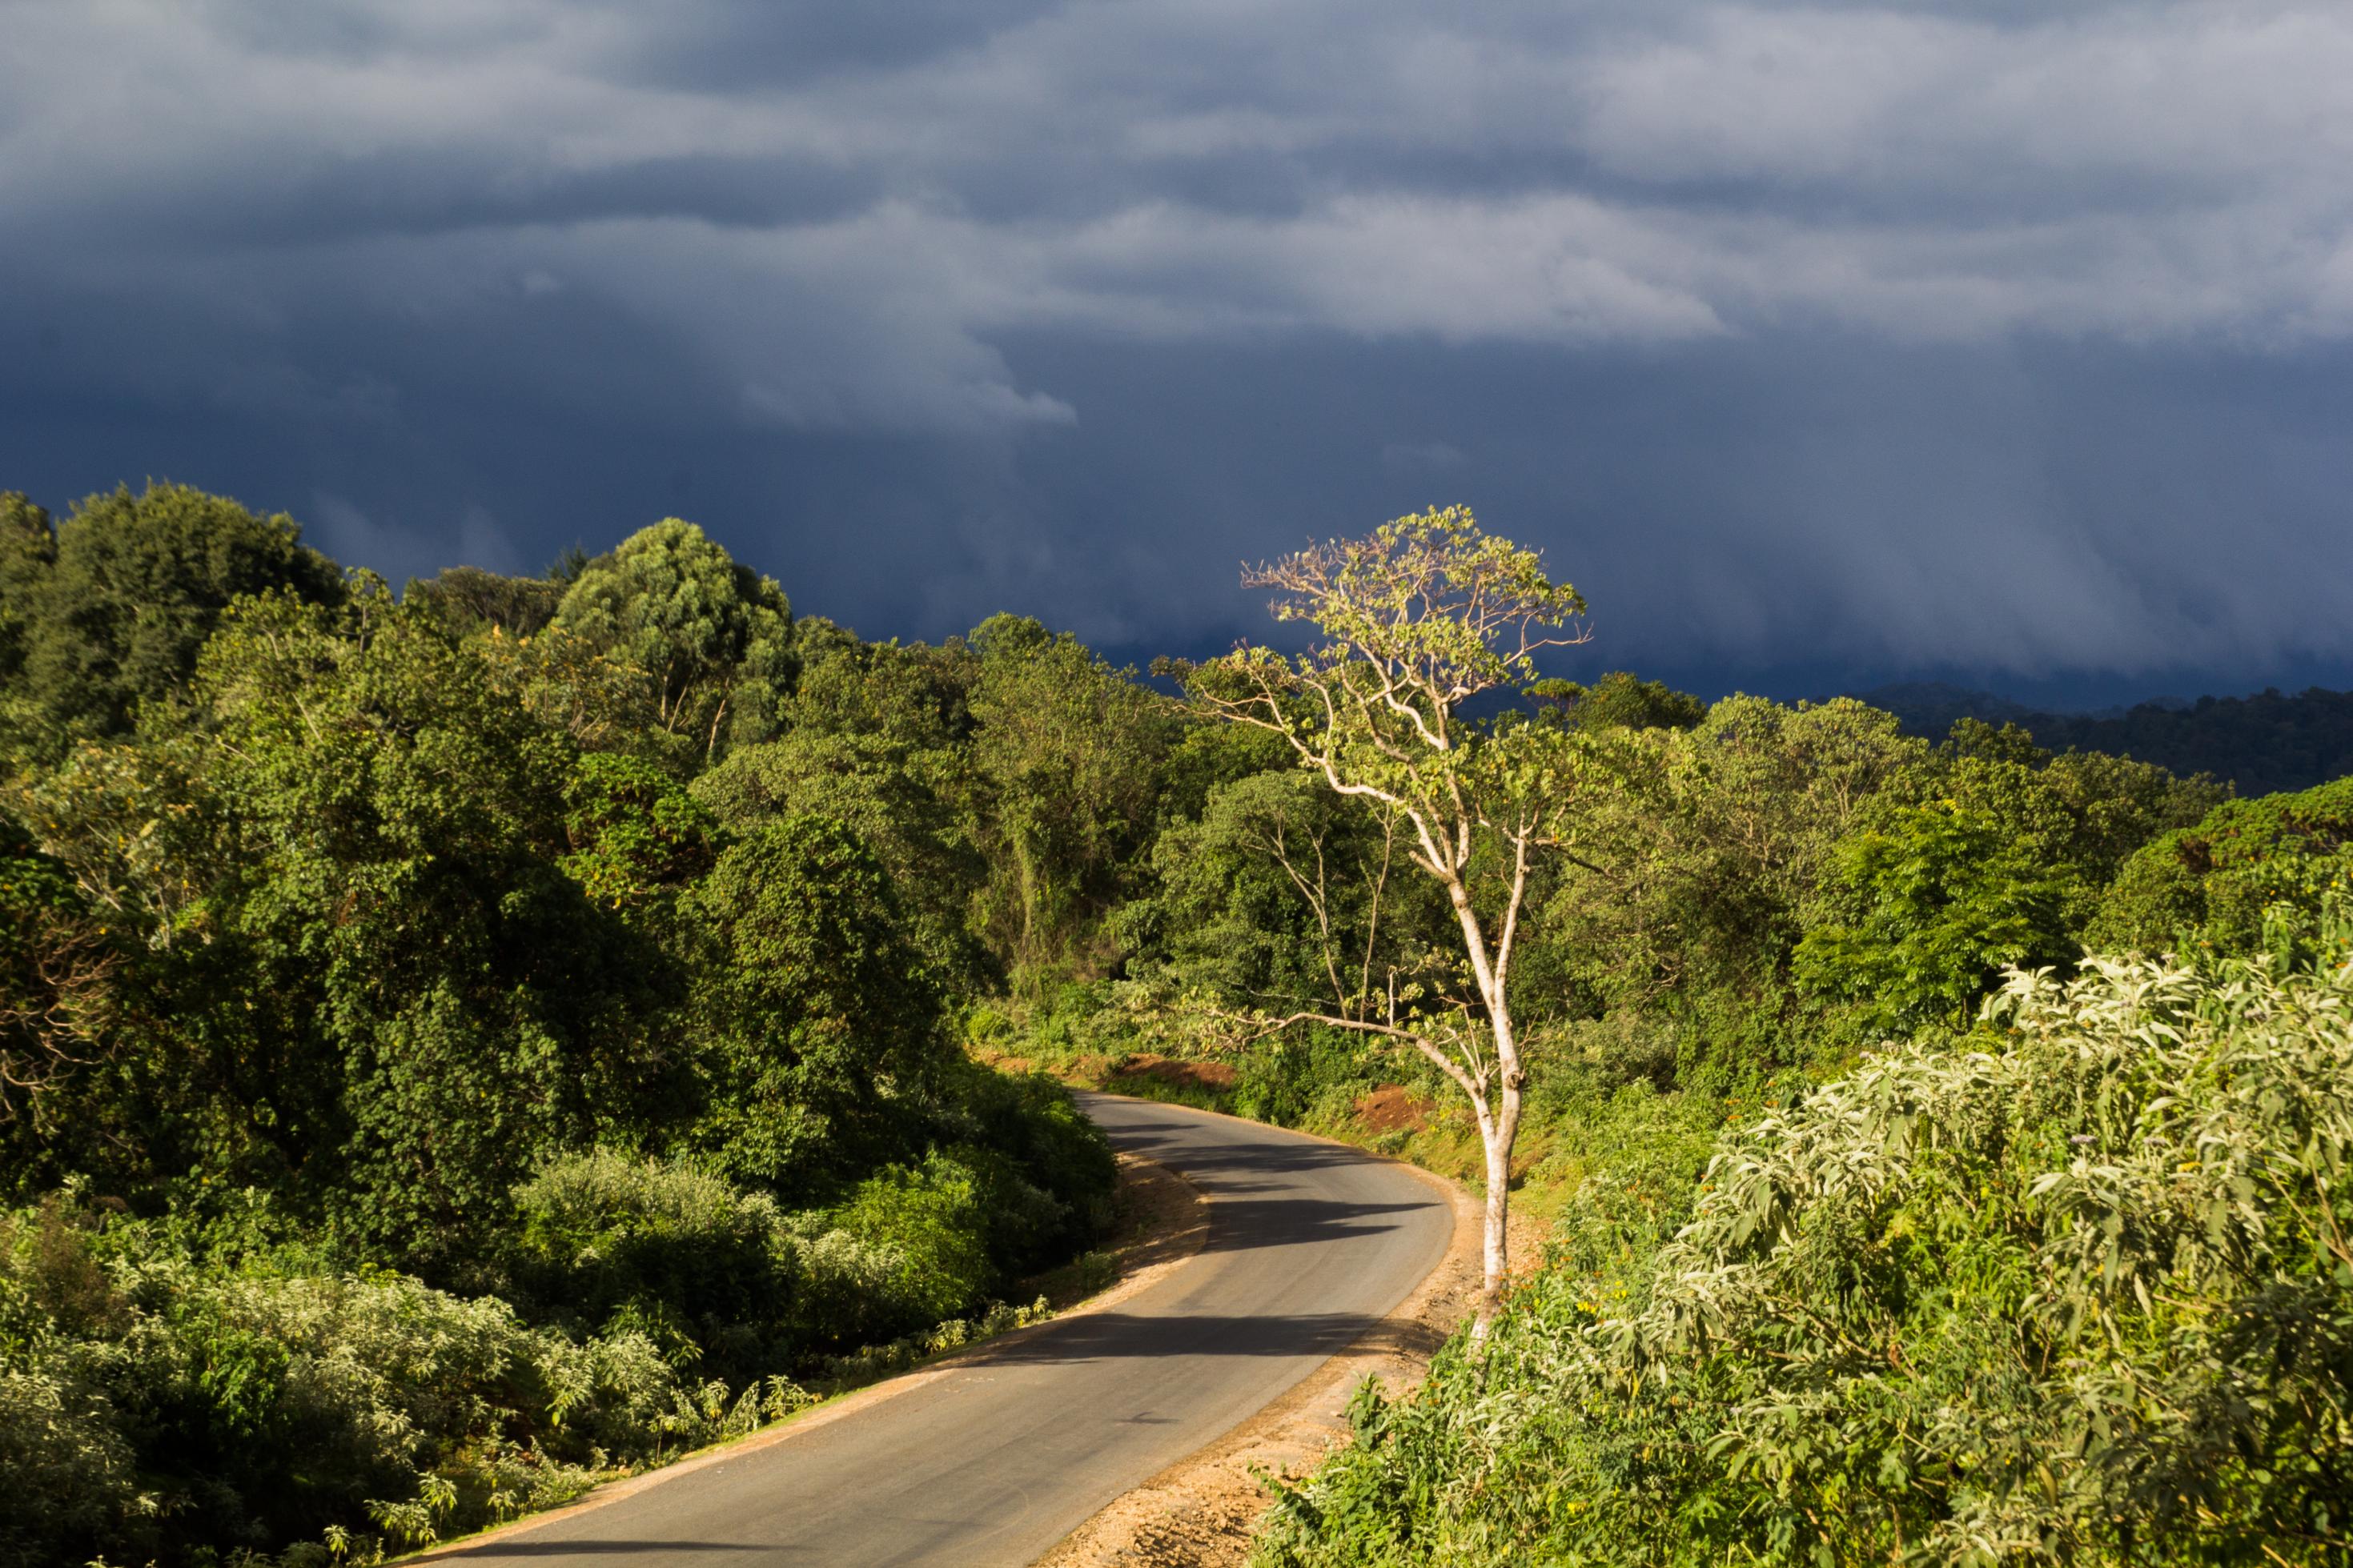 Eine asphaltierte Straße führt in dichten Wald, die Sonne steht noch auf Bäumen im Vordergrund. Hinten ziehen schwere Gewitterwolken auf.